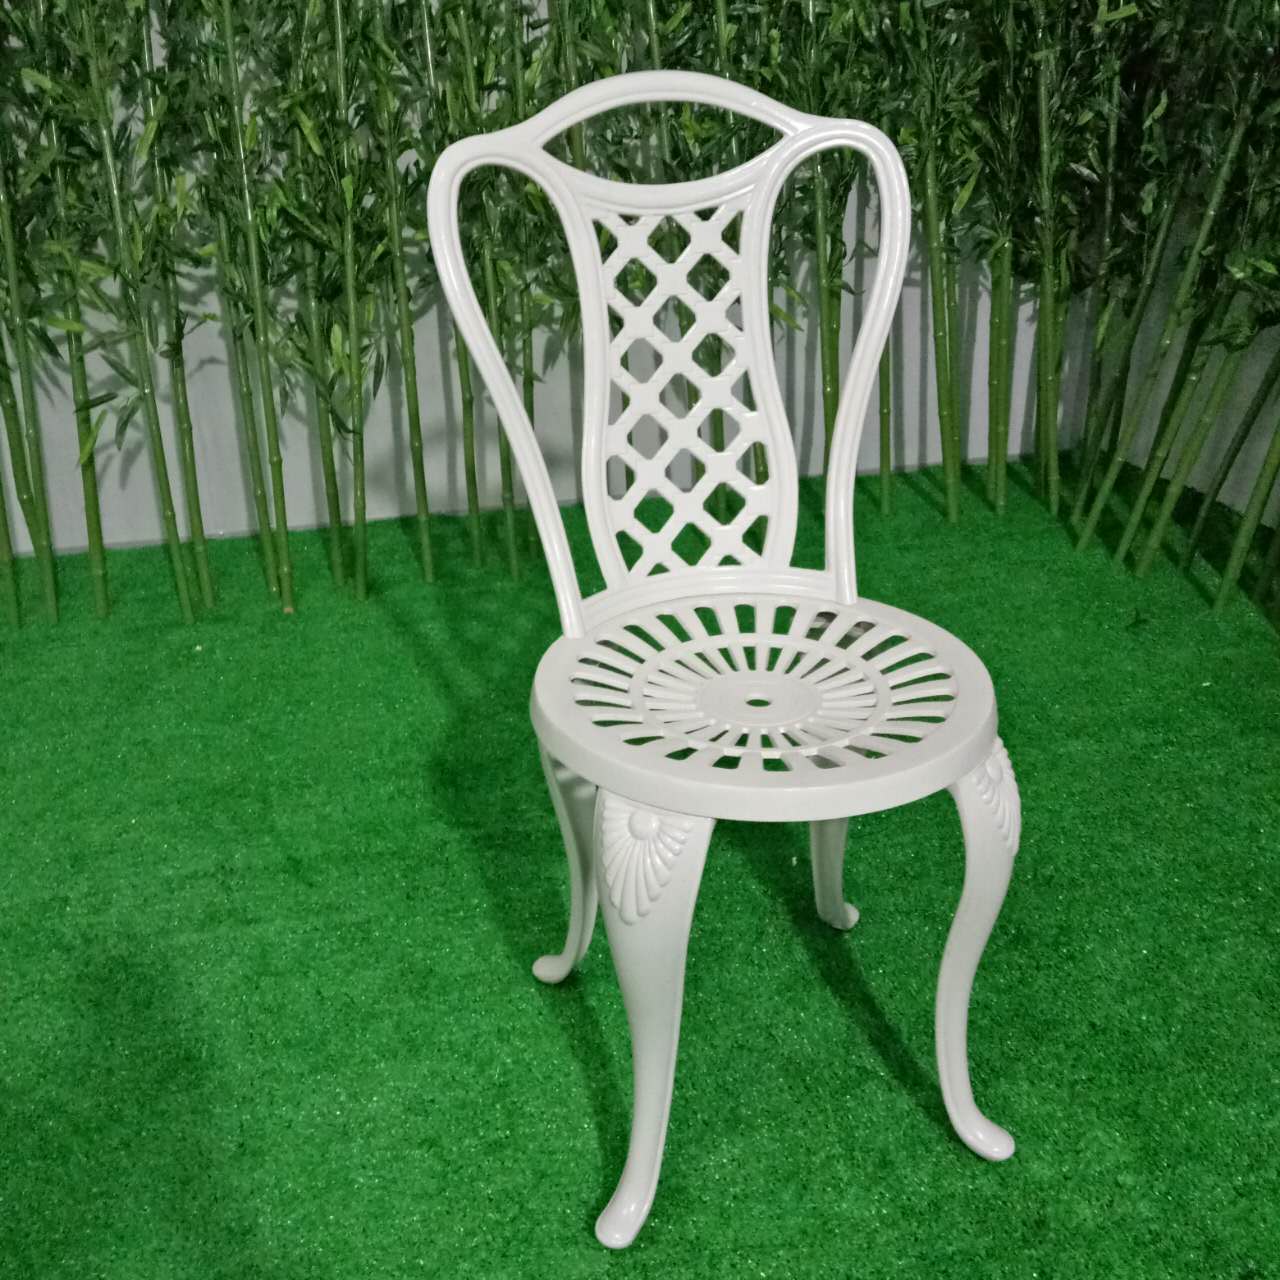 佛山铸铝桌椅厂家  欧式白色金属铸铝桌椅五件套   公园铸铝成套桌椅定做 佛山高档户外铸铝桌椅厂家